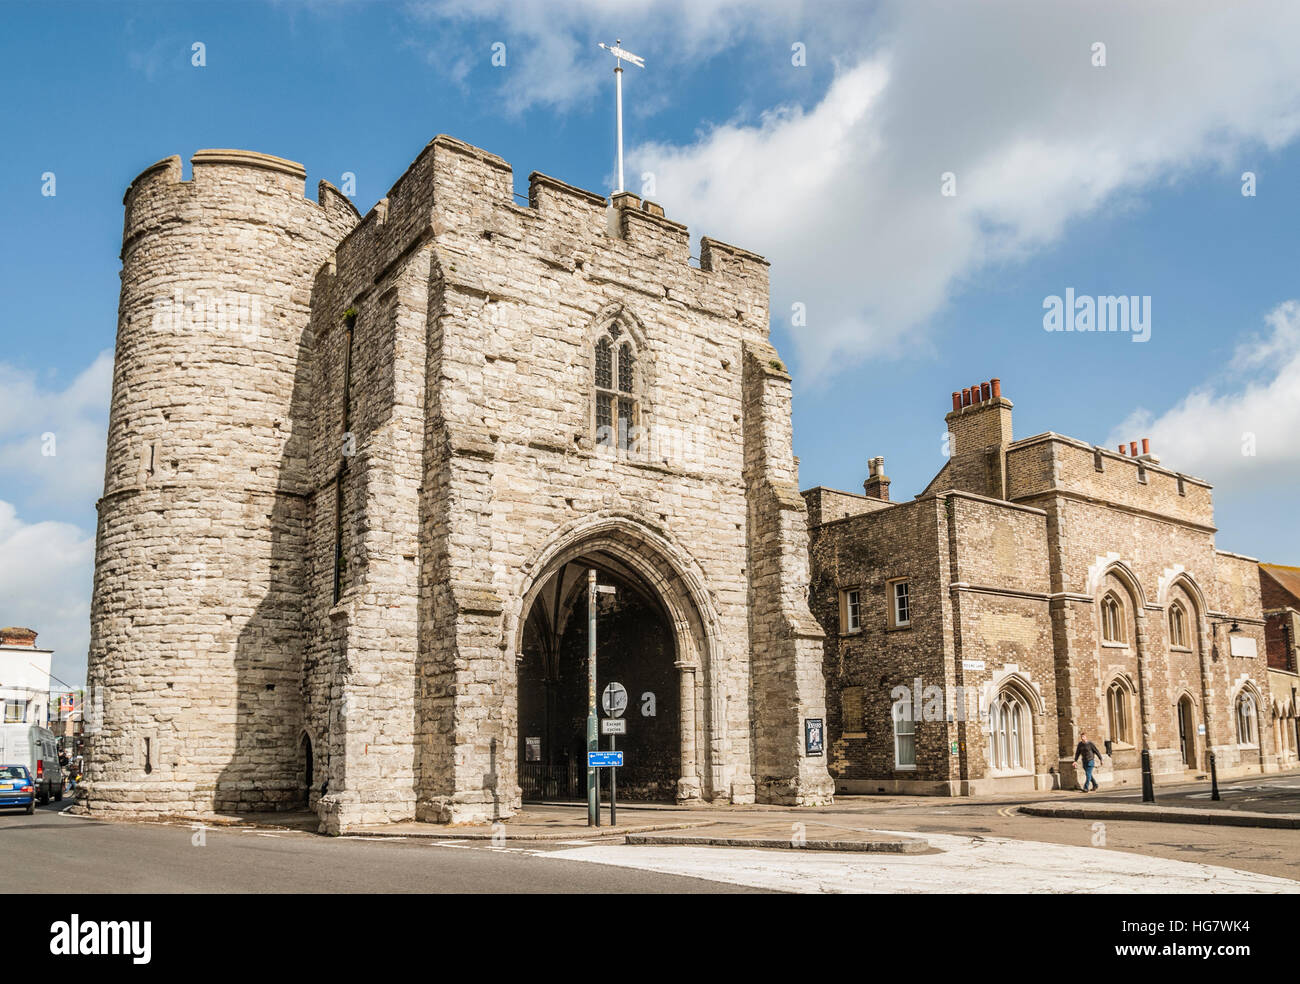 Das Westgate, ein mittelalterliches Torhaus in Canterbury, Kent, England Stockfoto